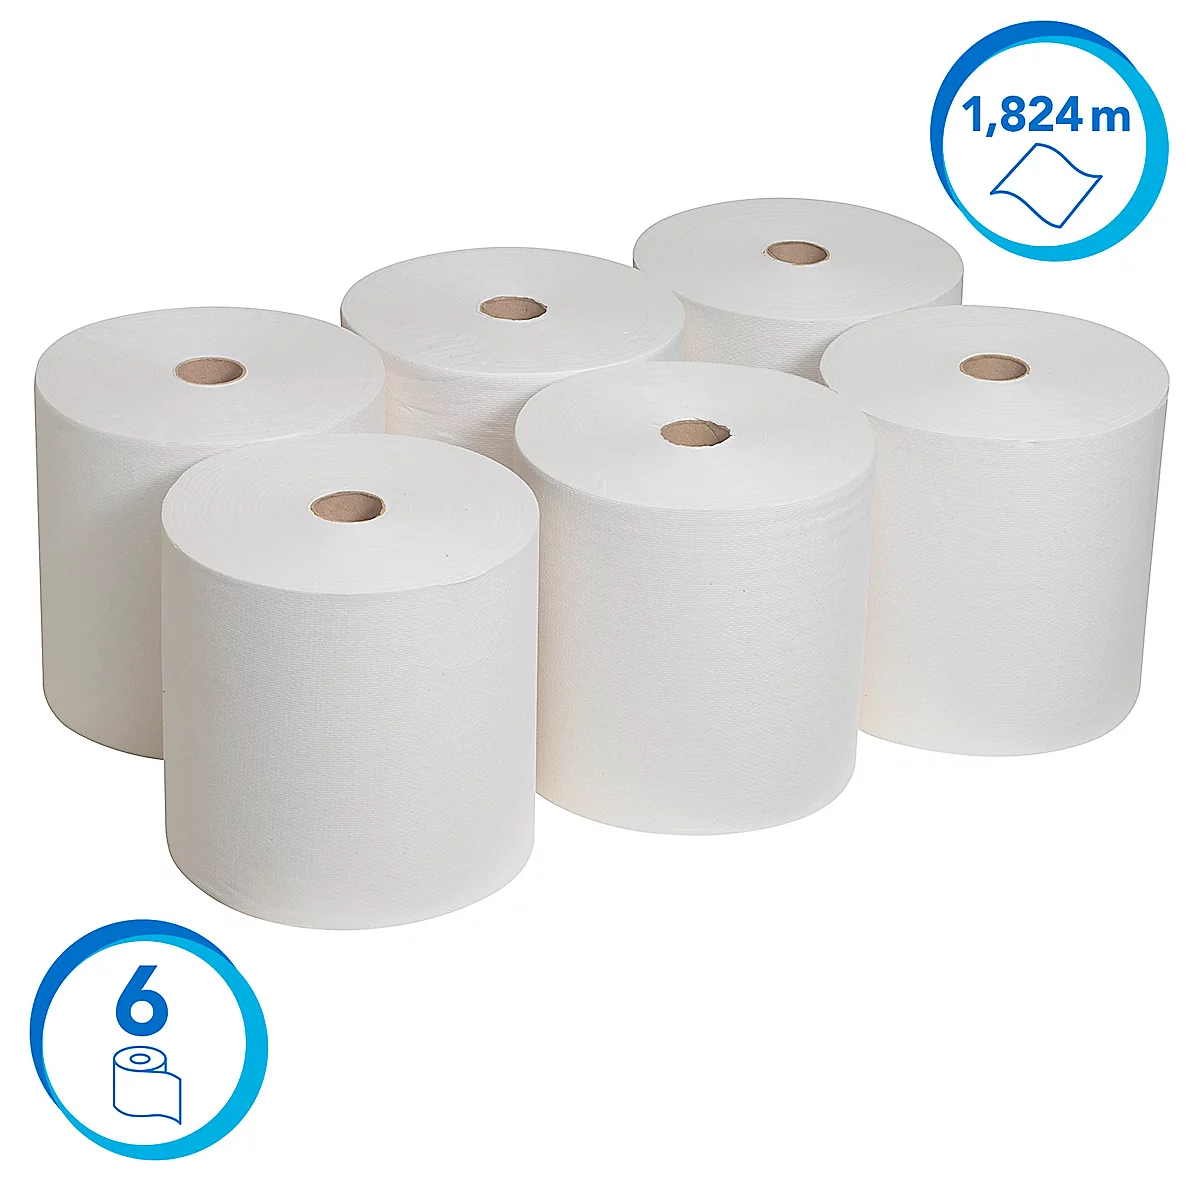 Rollo de papel Scott® 6667, resistente al desgarro, 1 capa, 6 rollos á 304 m, blanco